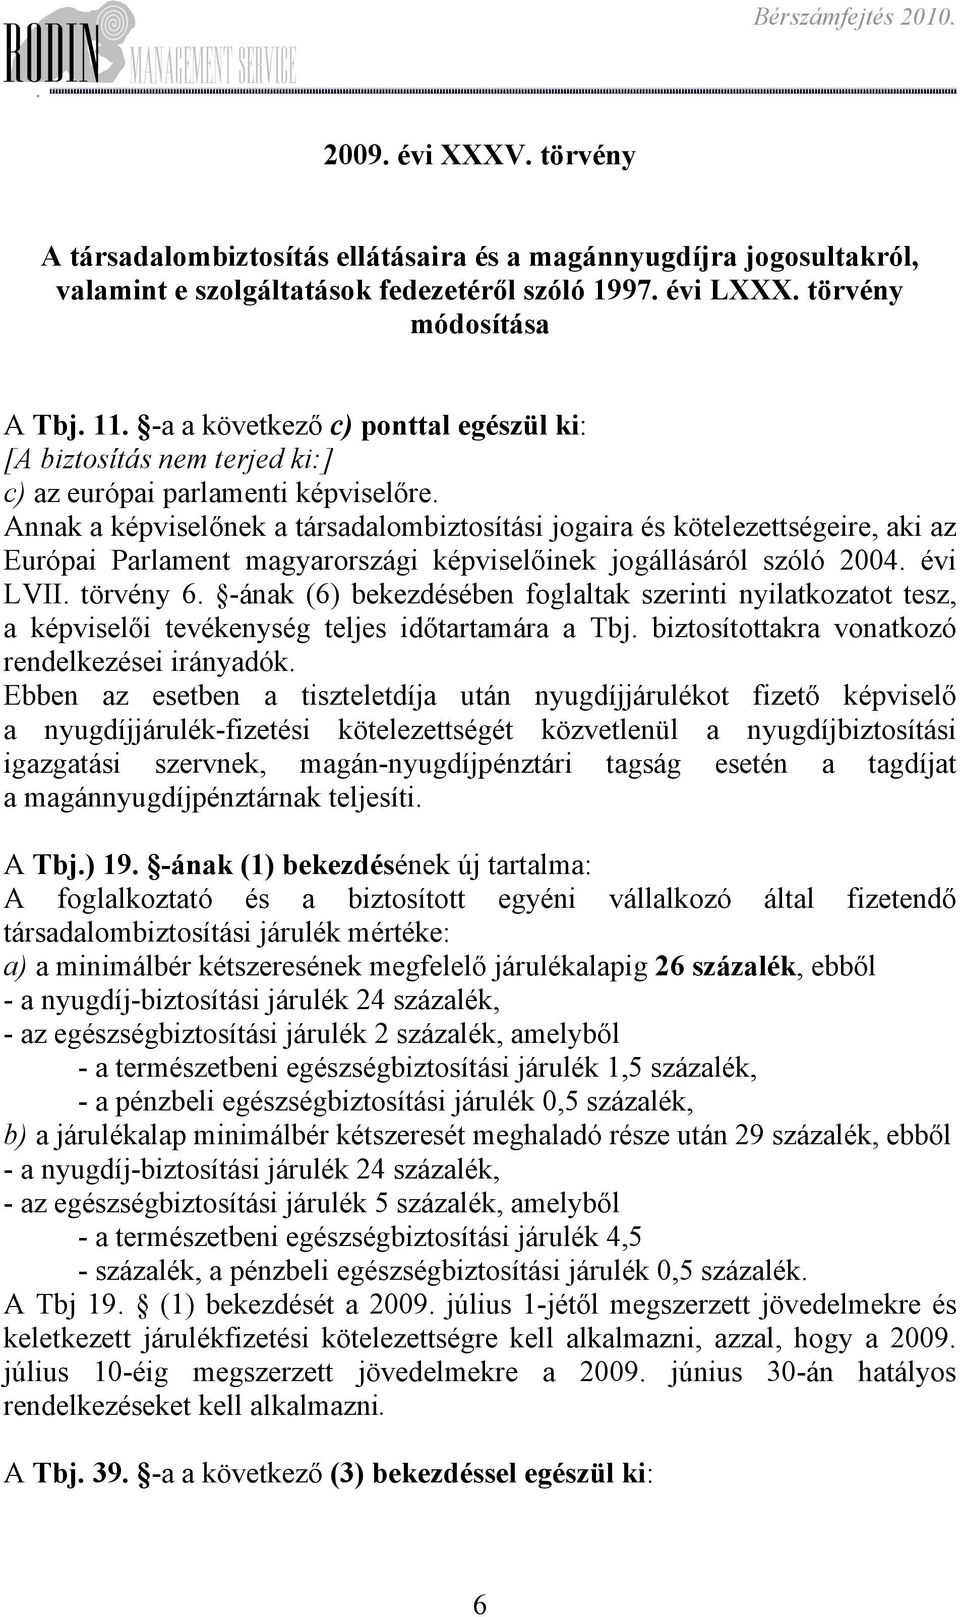 magyarországi képviselőinek jogállásáról szóló 2004 évi LVII törvény 6 -ának (6) bekezdésében foglaltak szerinti nyilatkozatot tesz, a képviselői tevékenység teljes időtartamára a Tbj biztosítottakra